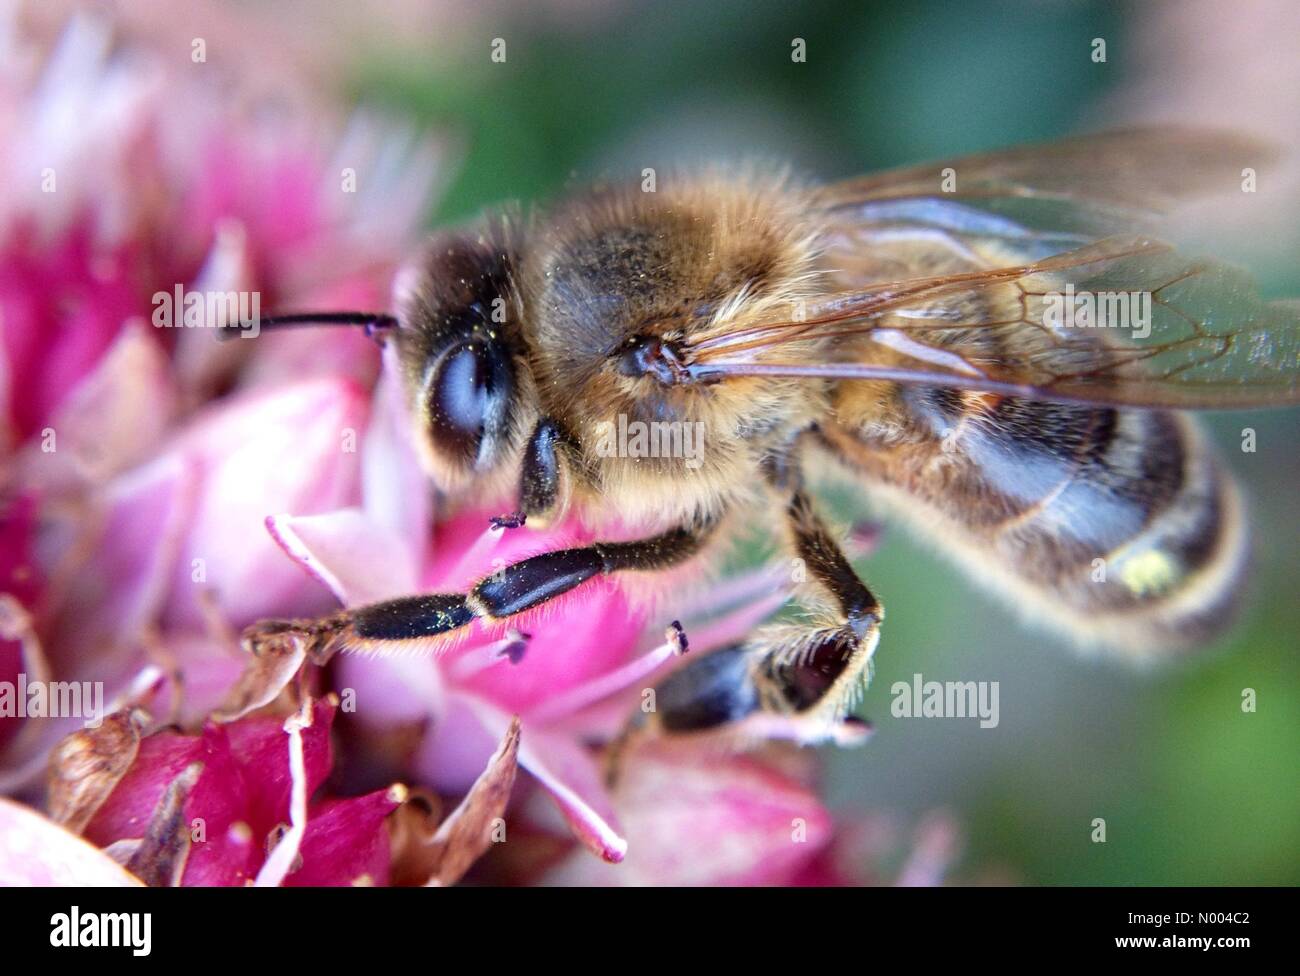 UK-Wetter: Mit bewölktem Himmel waren die Bienen noch damit beschäftigt, Bestäubung im Golden Hektar großen Park in der Nähe von Leeds, West Yorkshire. Aufgenommen am 17. September 2015. Stockfoto